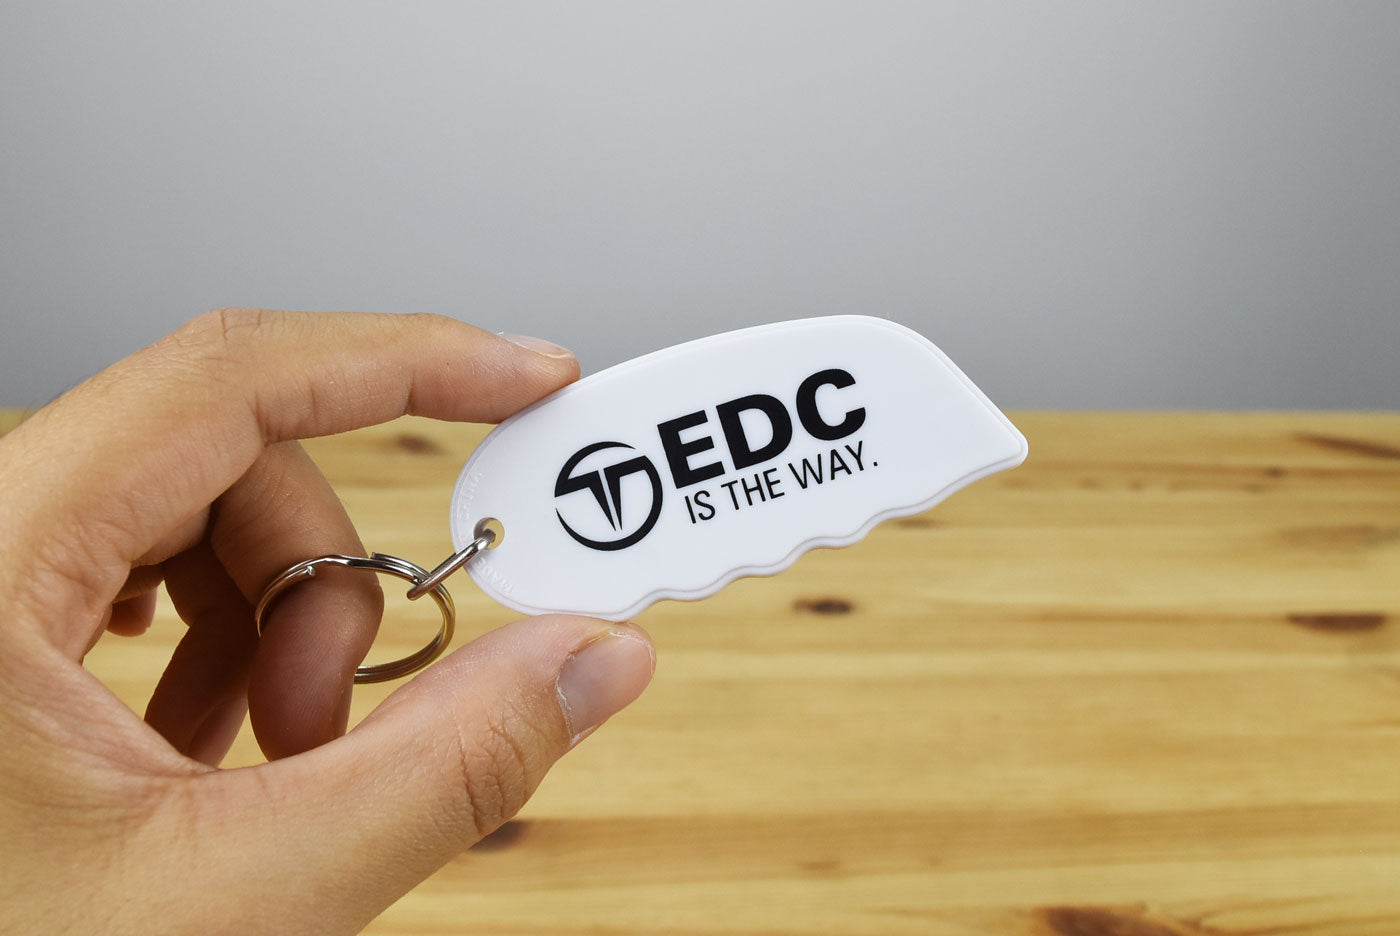 TT Pocket Sharp EDC Keychain Safety Knife